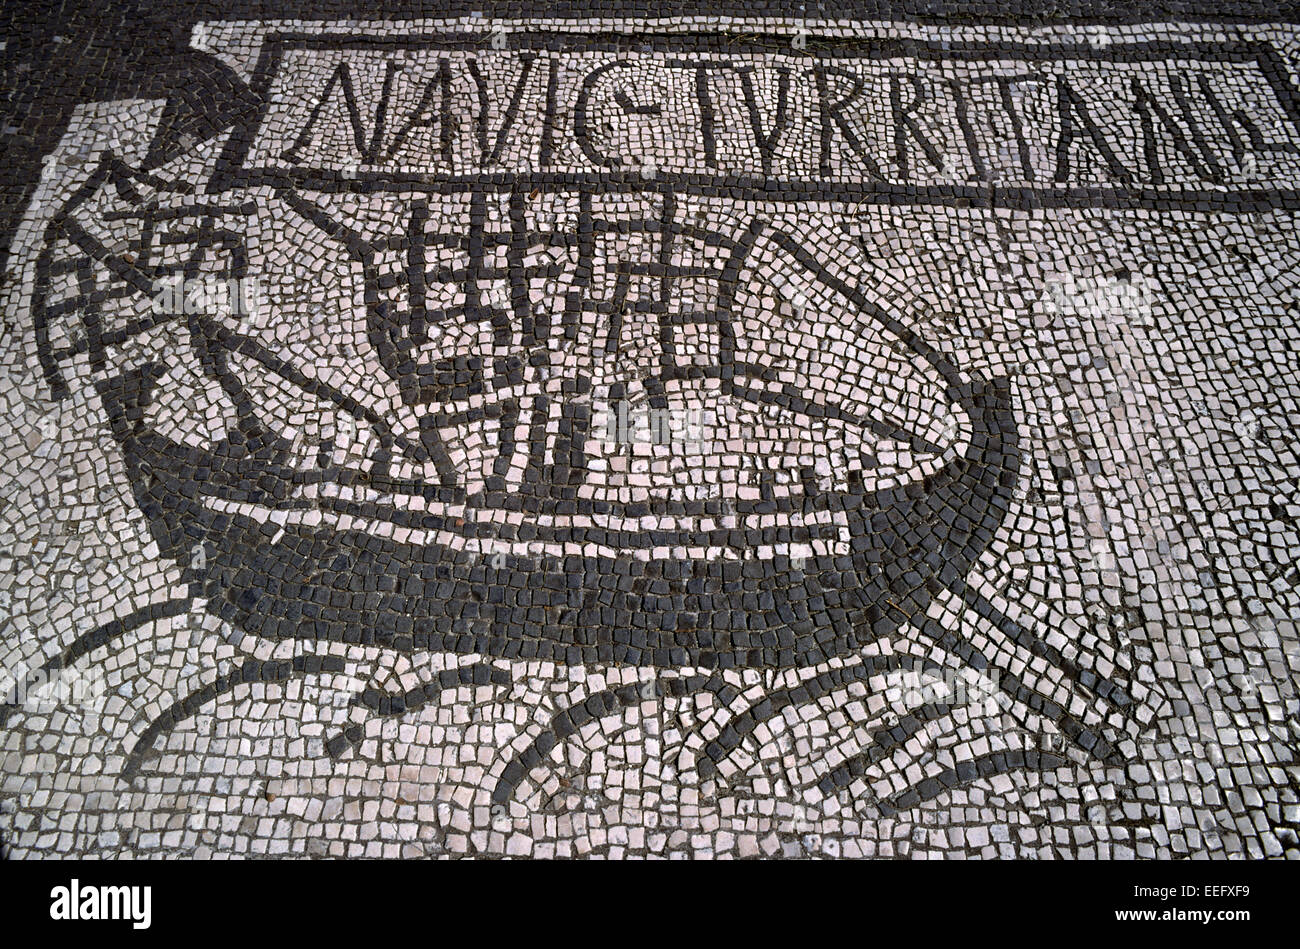 italy, rome, ostia antica, piazzale delle corporazioni, ancient roman mosaic detail Stock Photo